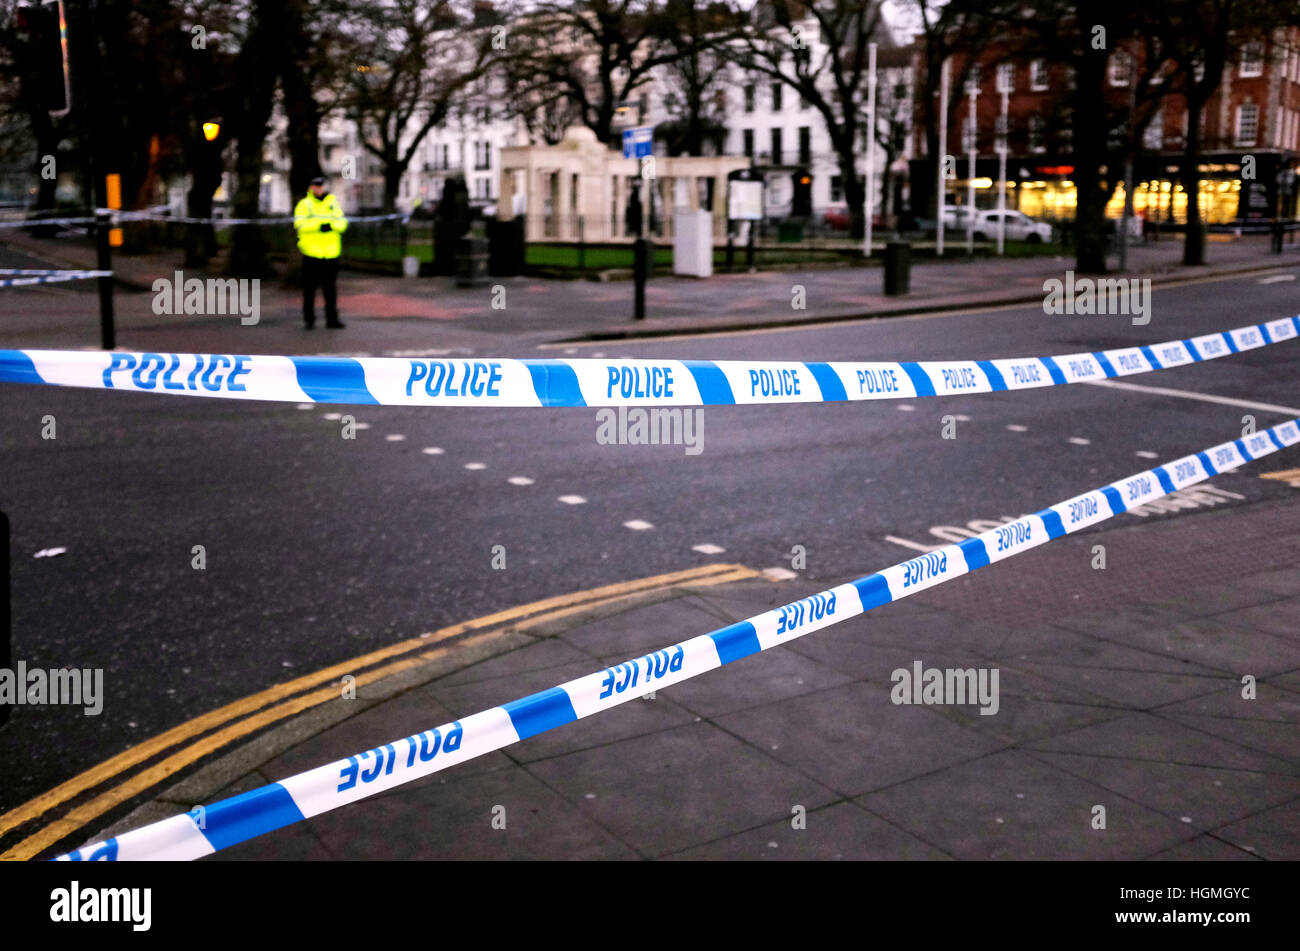 Brighton, UK. Jan 11, 2017. La police sur les lieux d'un délit de fuite survenu à la jonction de l'Old Steine et St James's Street à Londres où un piéton a été tué . Crédit : Simon Dack/Alamy Live News Banque D'Images